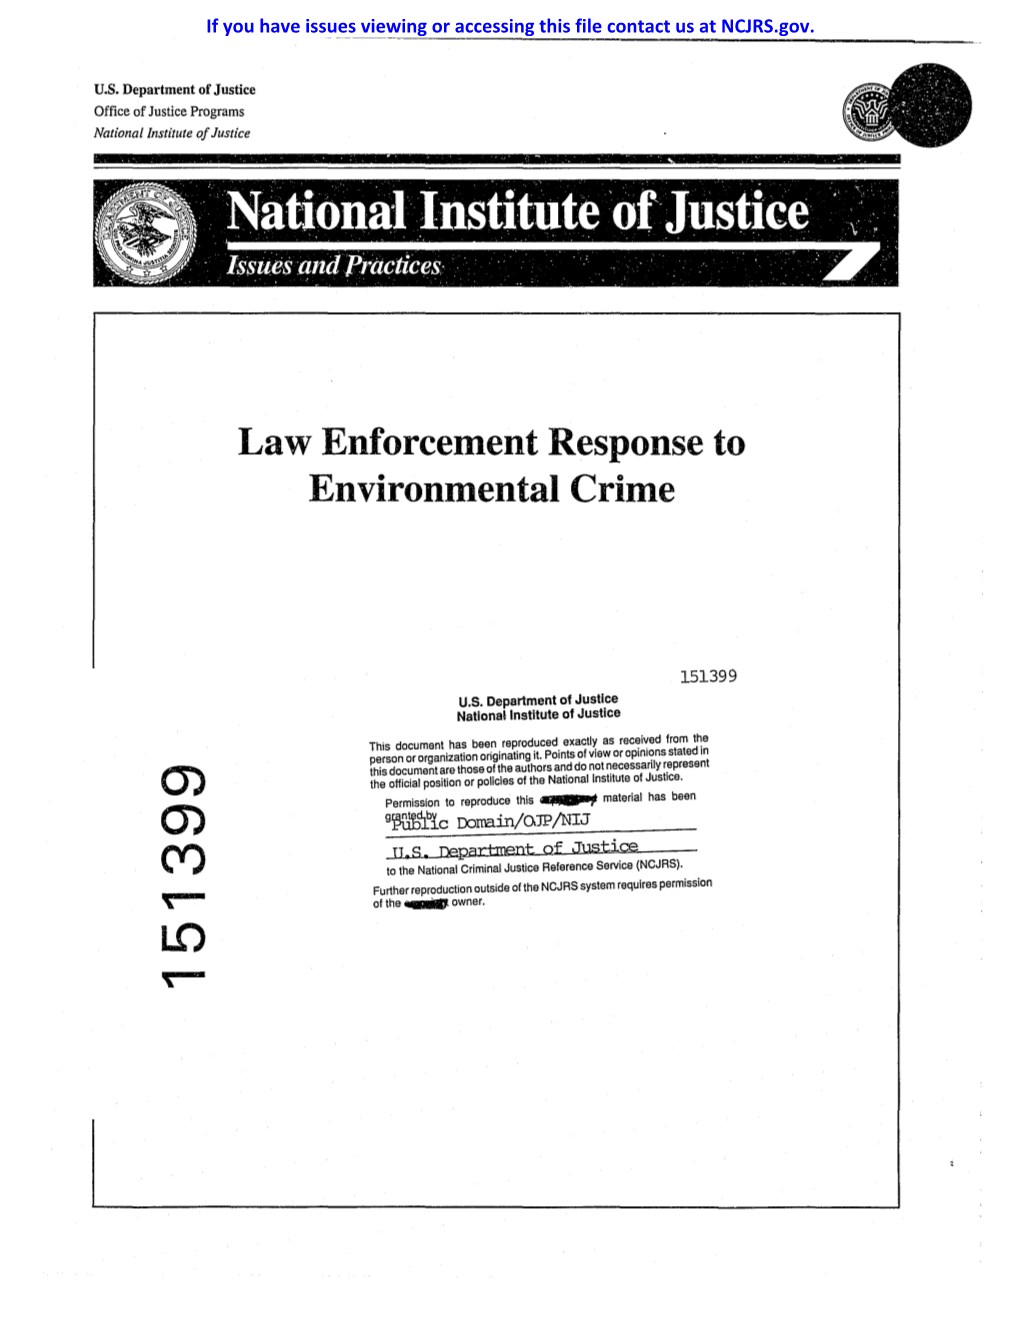 Law Enforcement Response to Environmental Crime